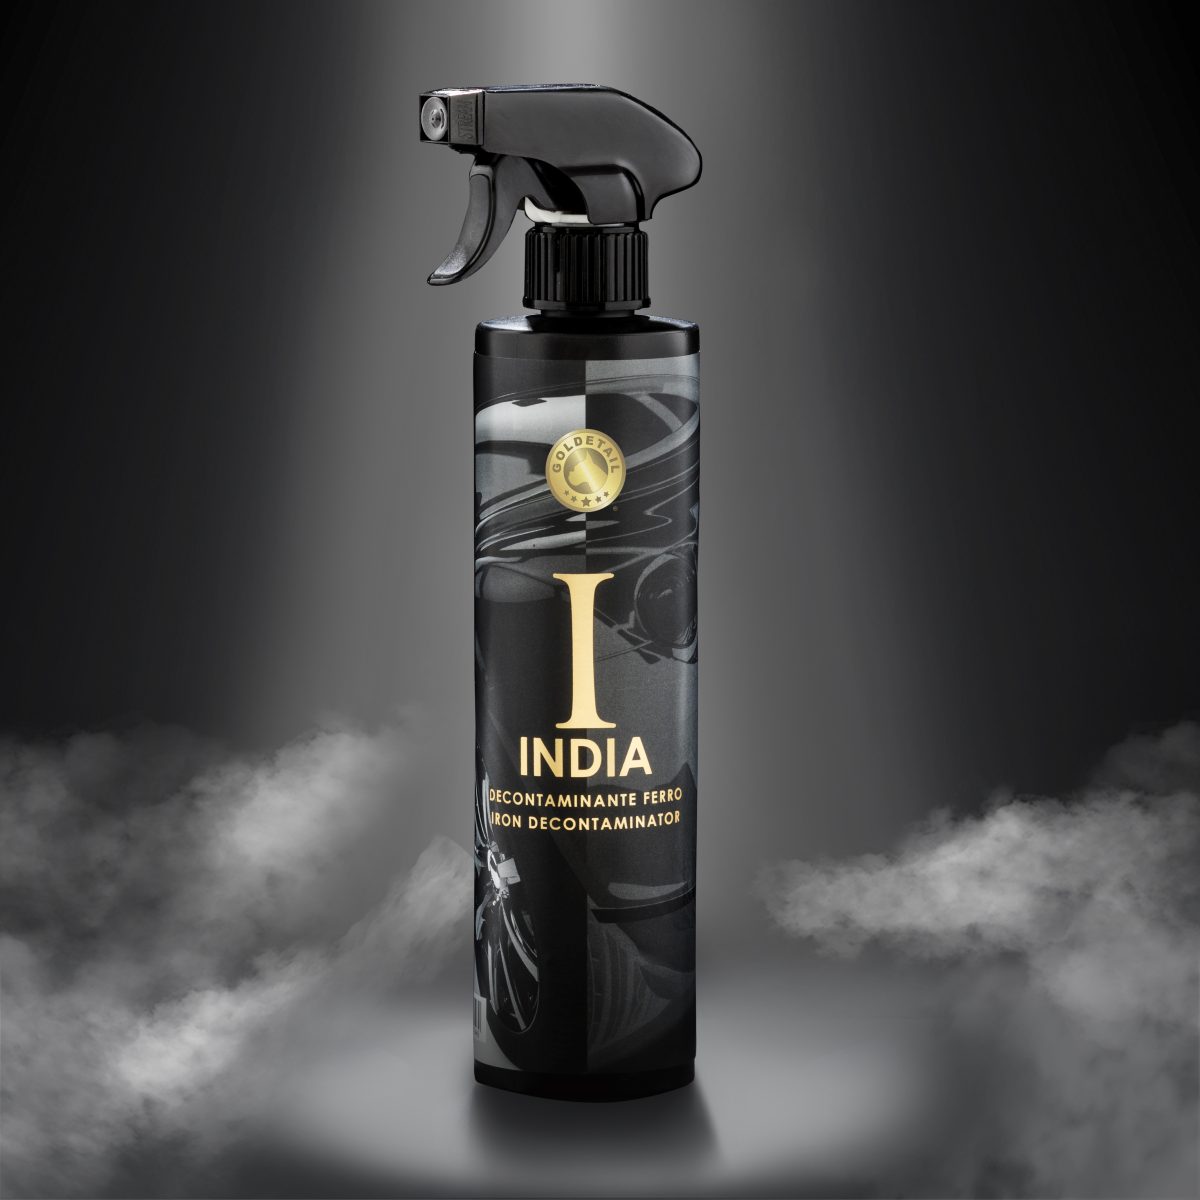 Bottle of India Iron Decontaminator